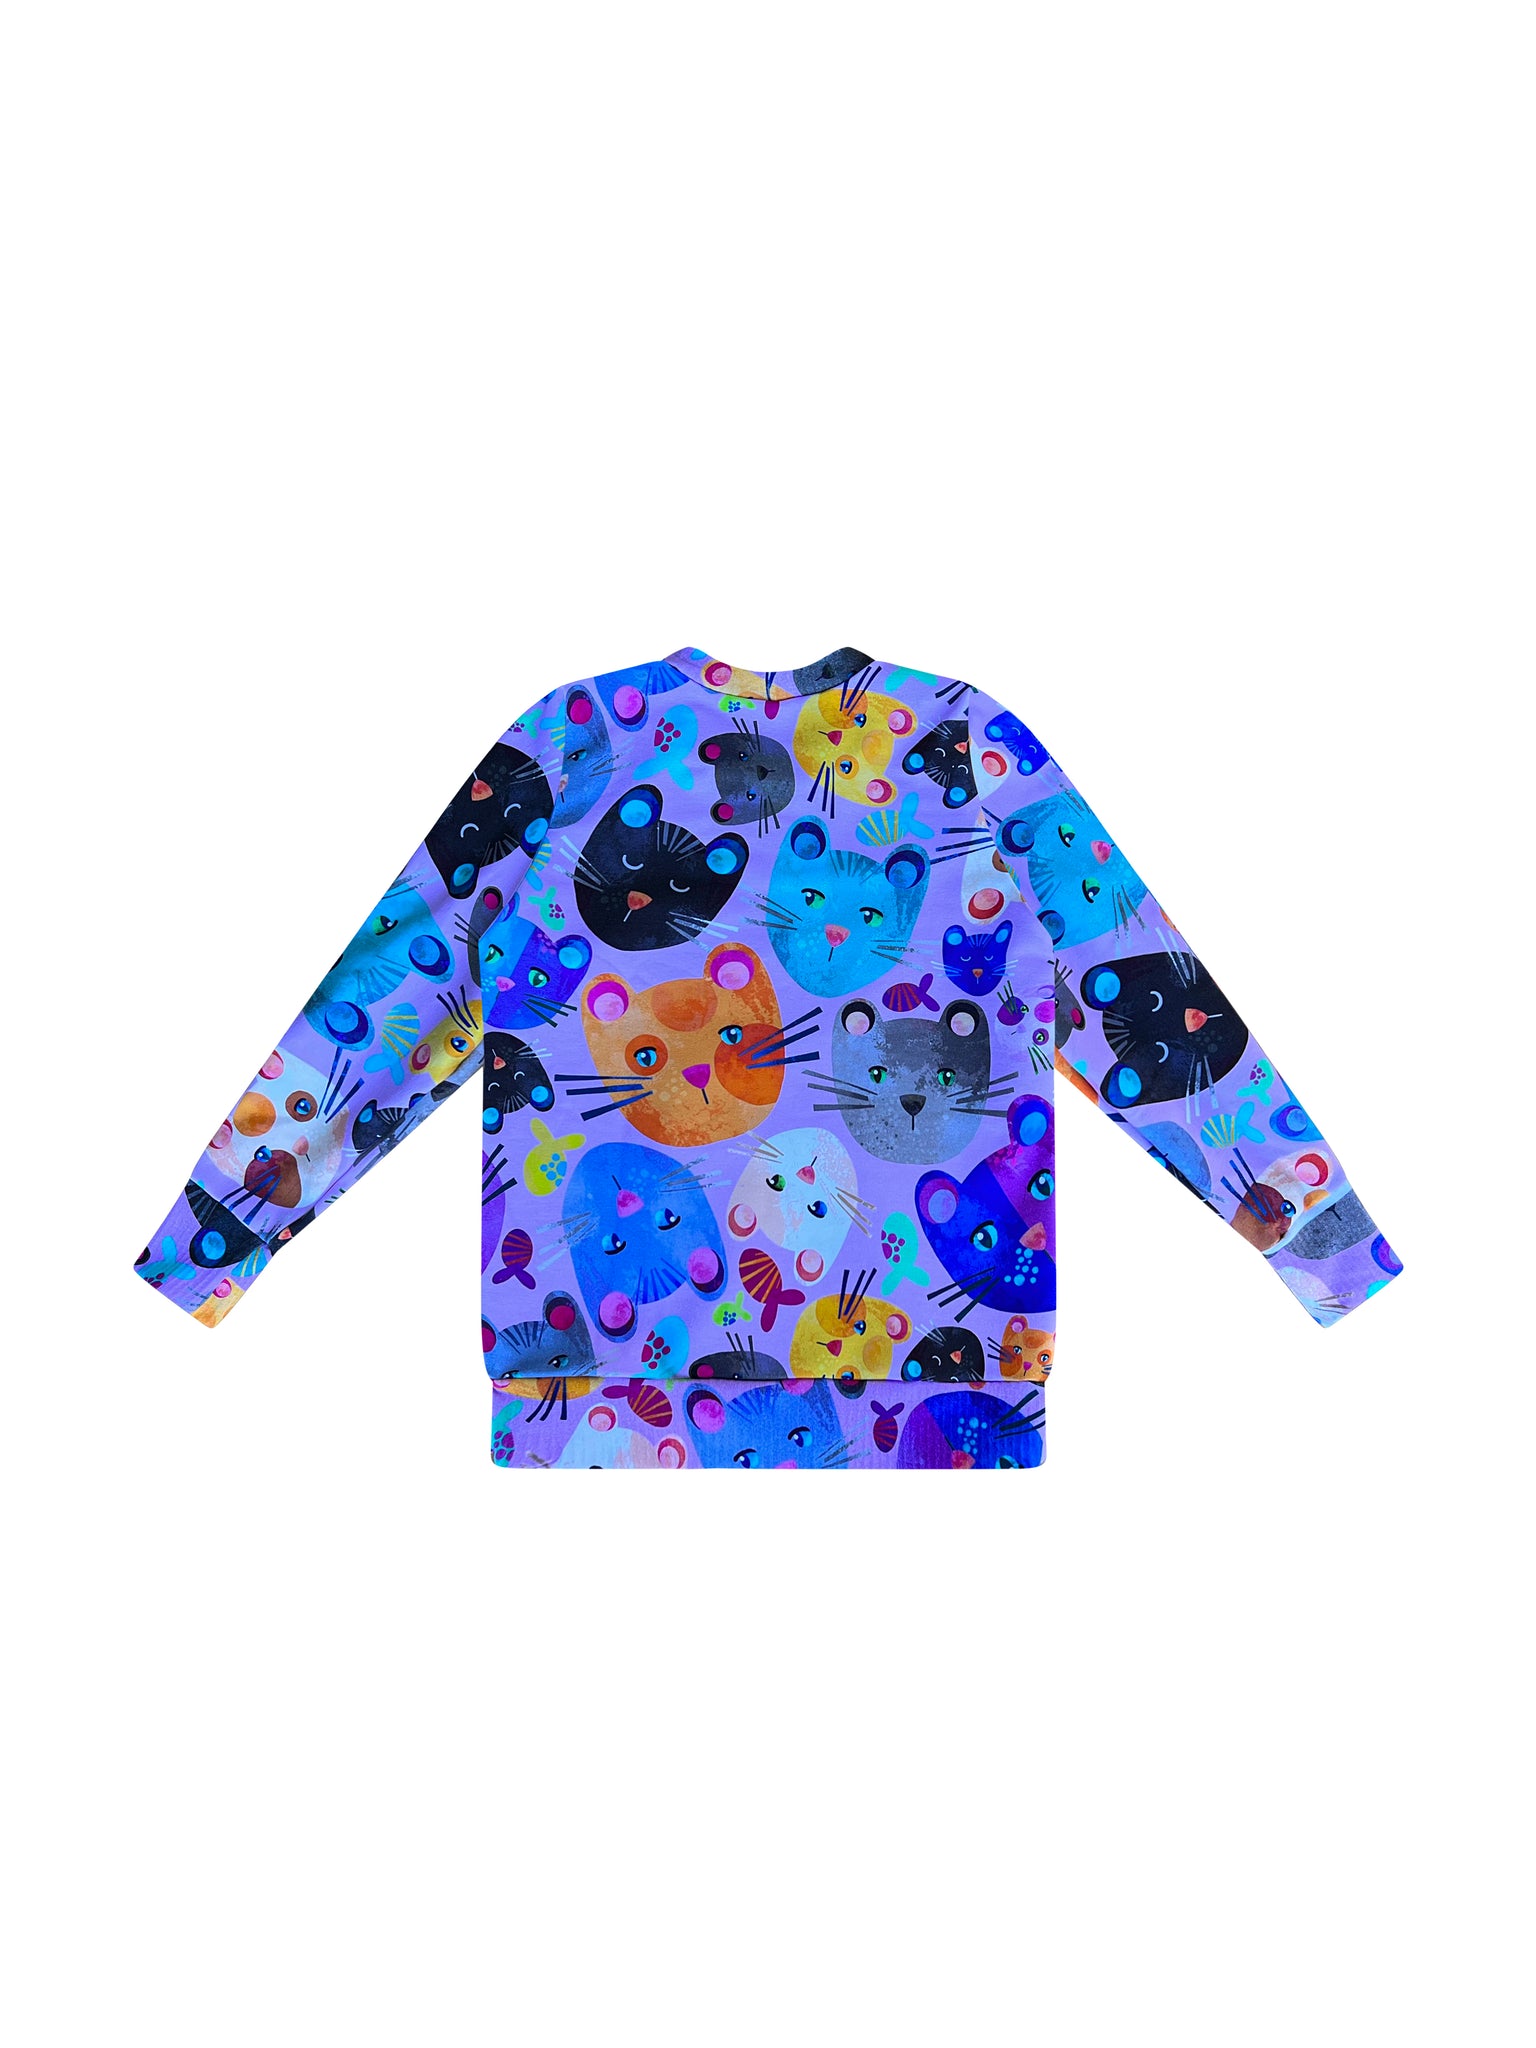 Kids Sweatshirt in 'Lilac Cats' - Kasey Rainbow